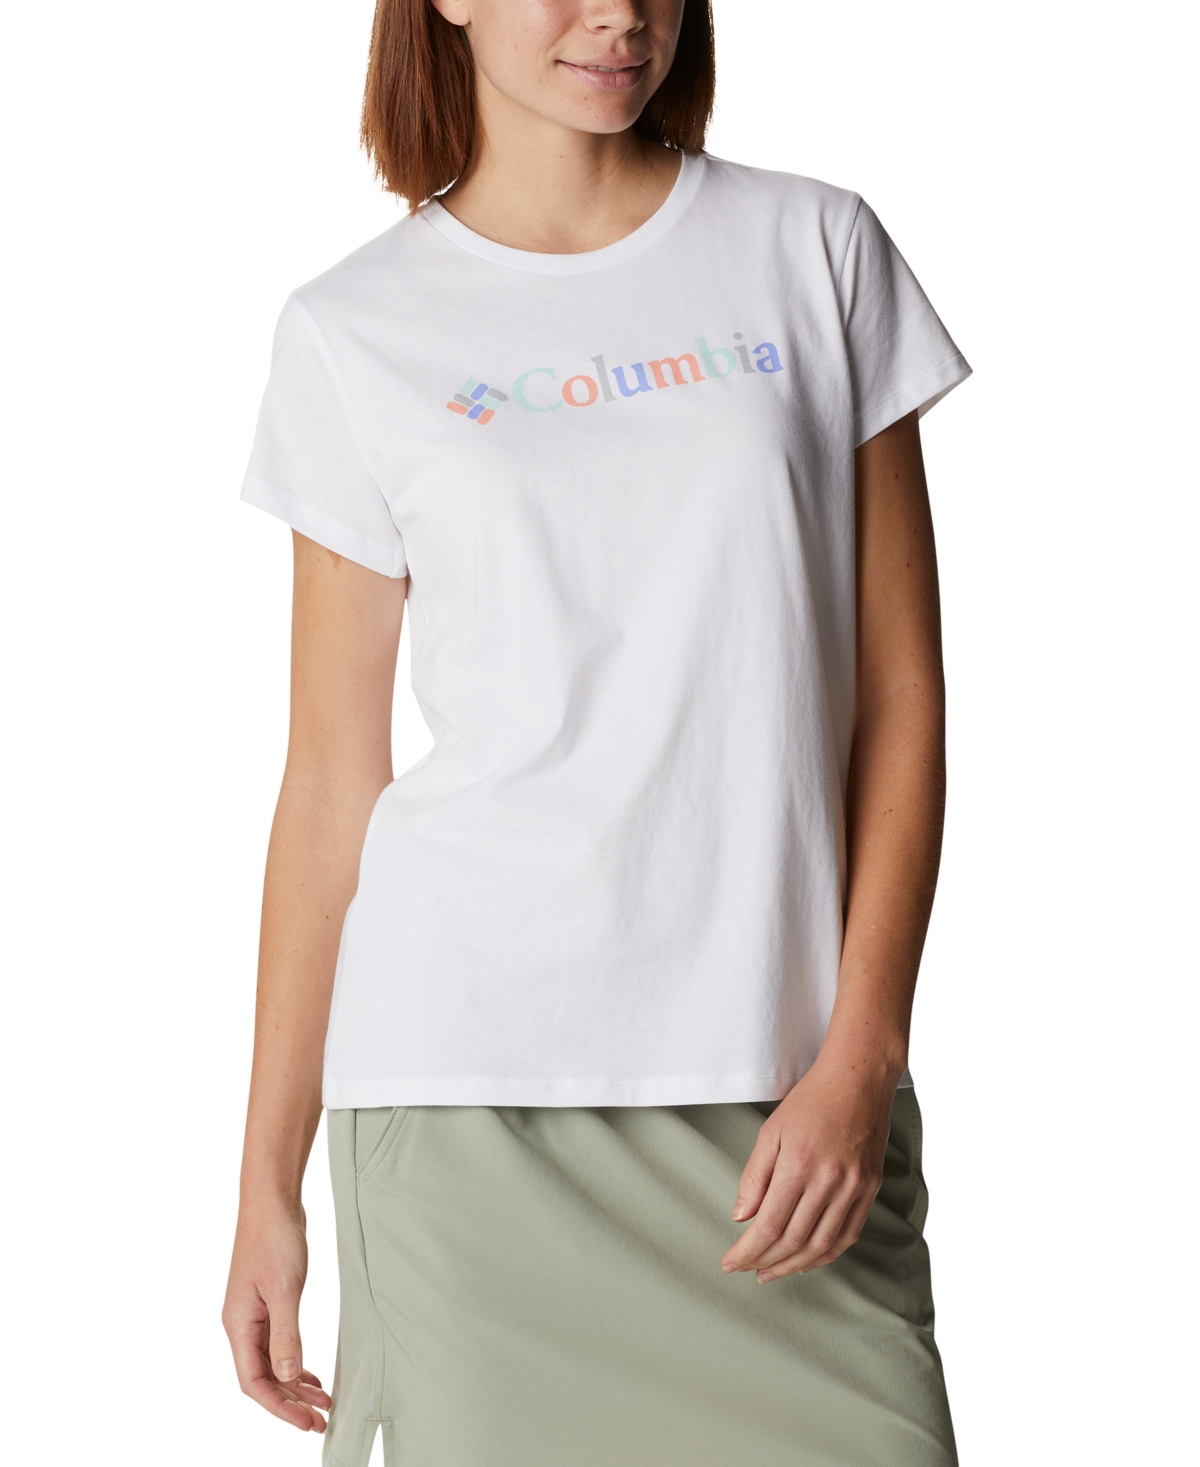 Columbia Women's Trek Short Sleeve Graphic T-Shirt